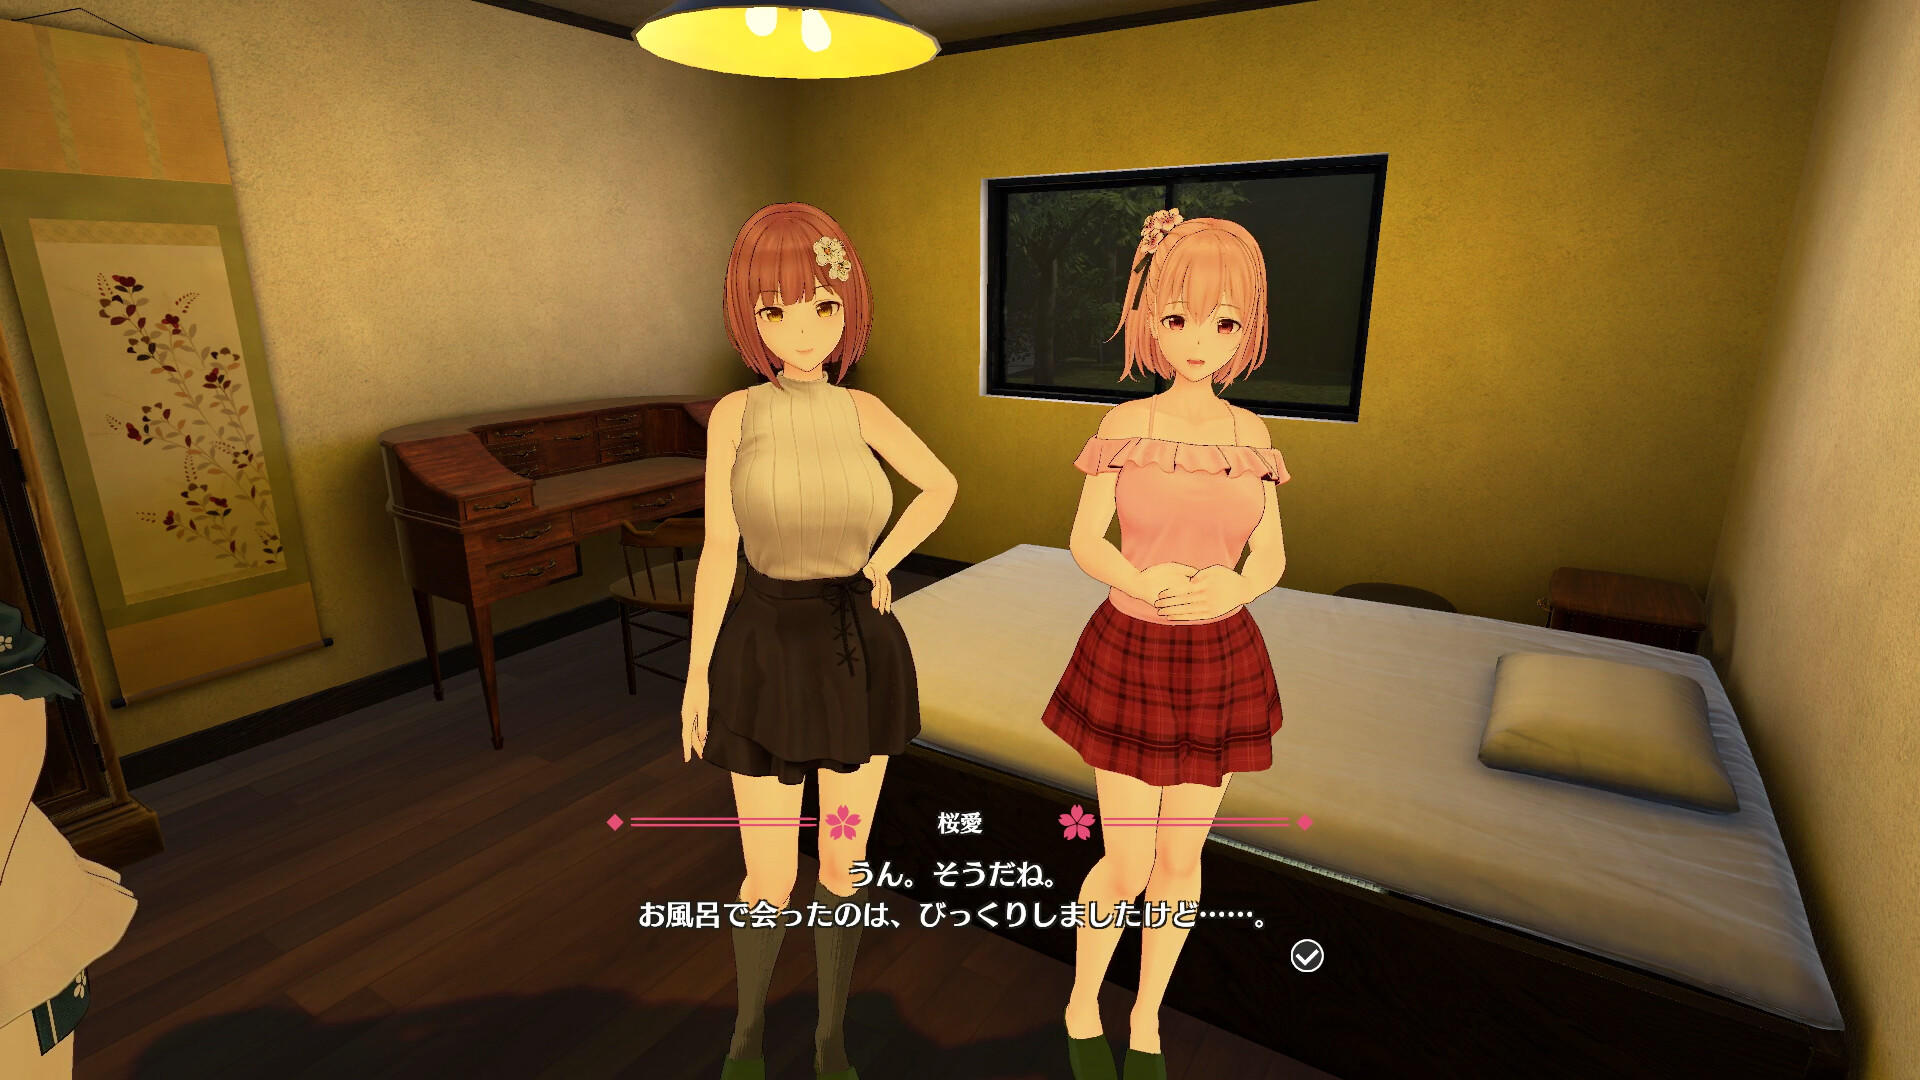 Koi-Koi: Love Blossoms Non-VR Edition遊戲截圖